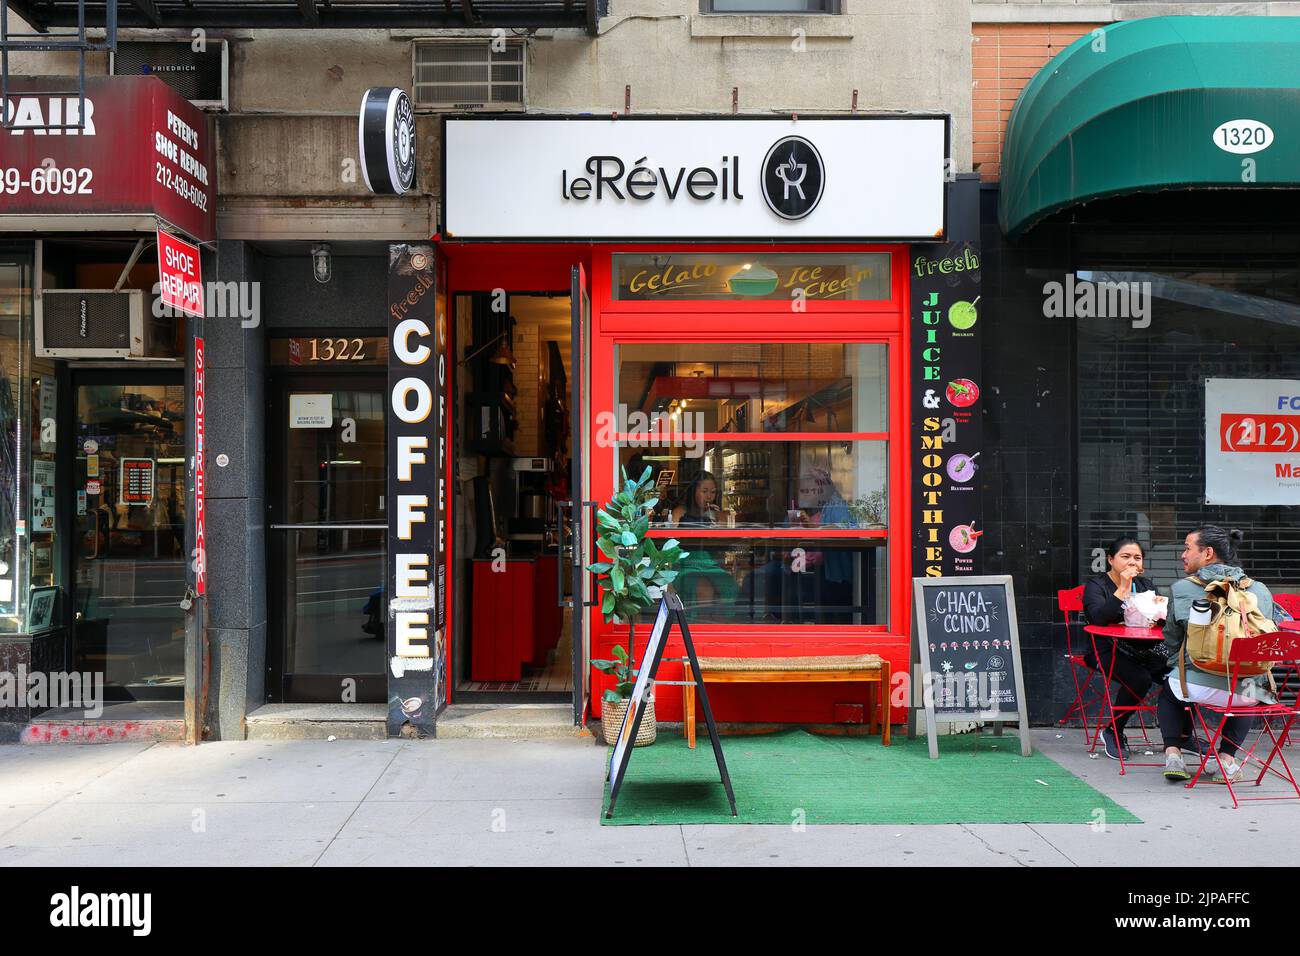 Le Reveil Coffee, 1322 2. Ave, New York, NYC Foto von einem Café und Café in Manhattans Upper East Side. Stockfoto